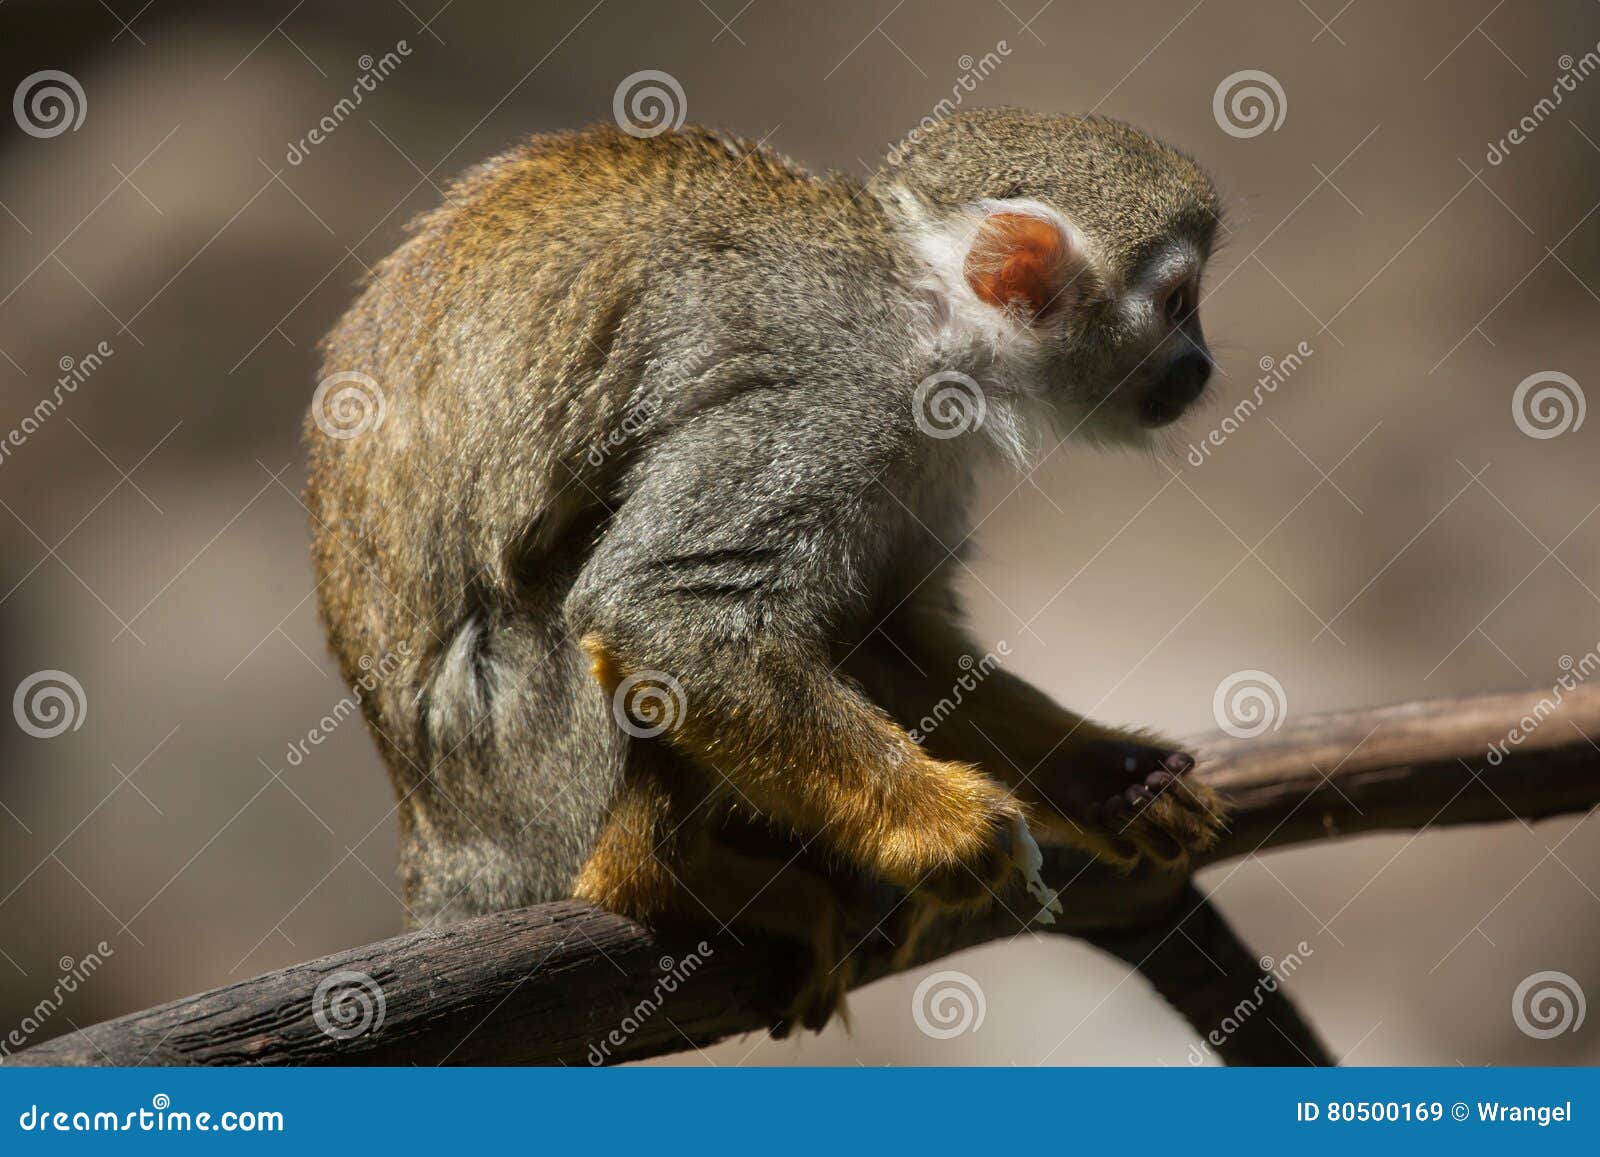 common squirrel monkey saimiri sciureus.